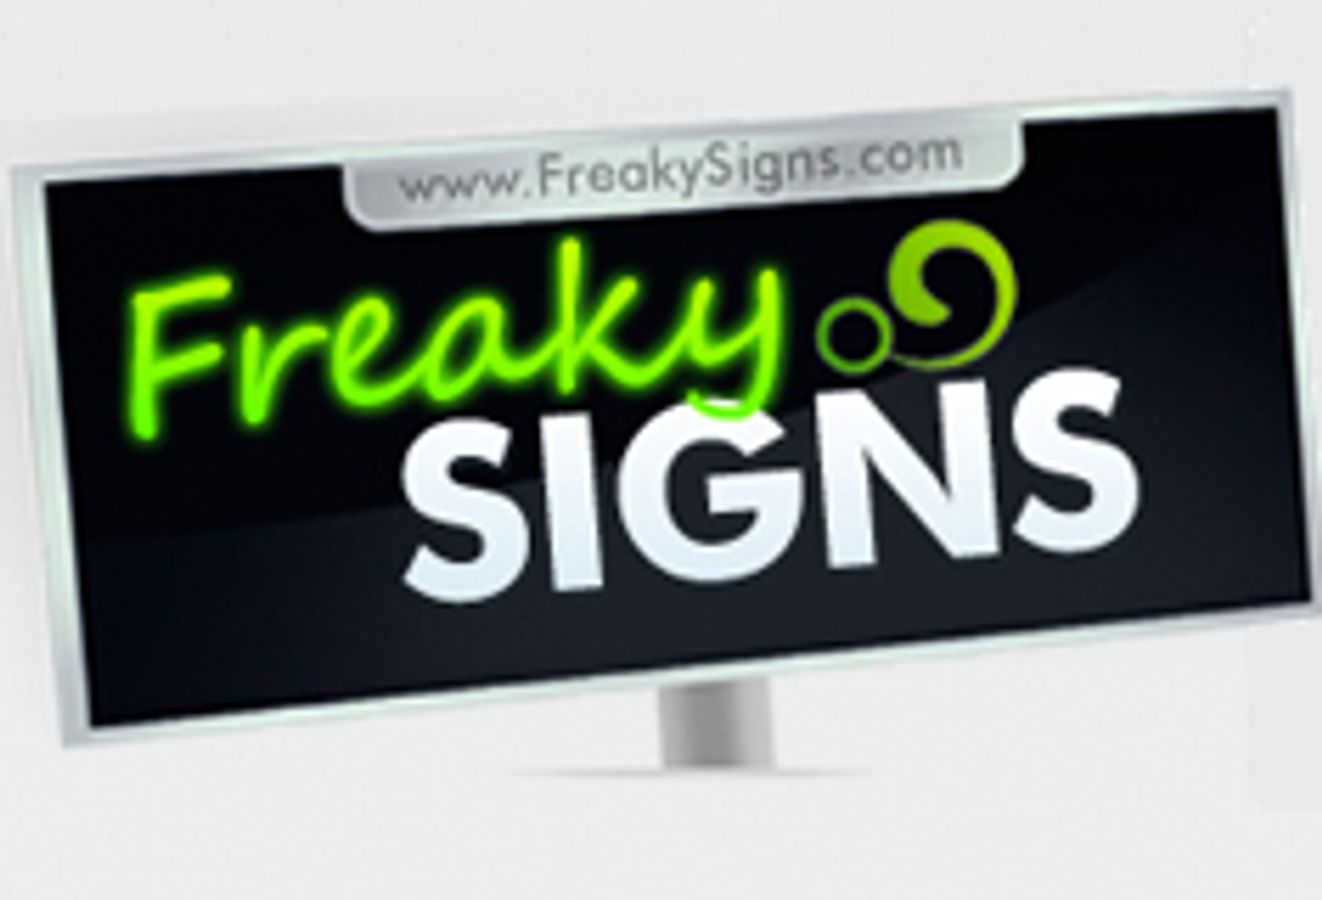 FreakySigns.com